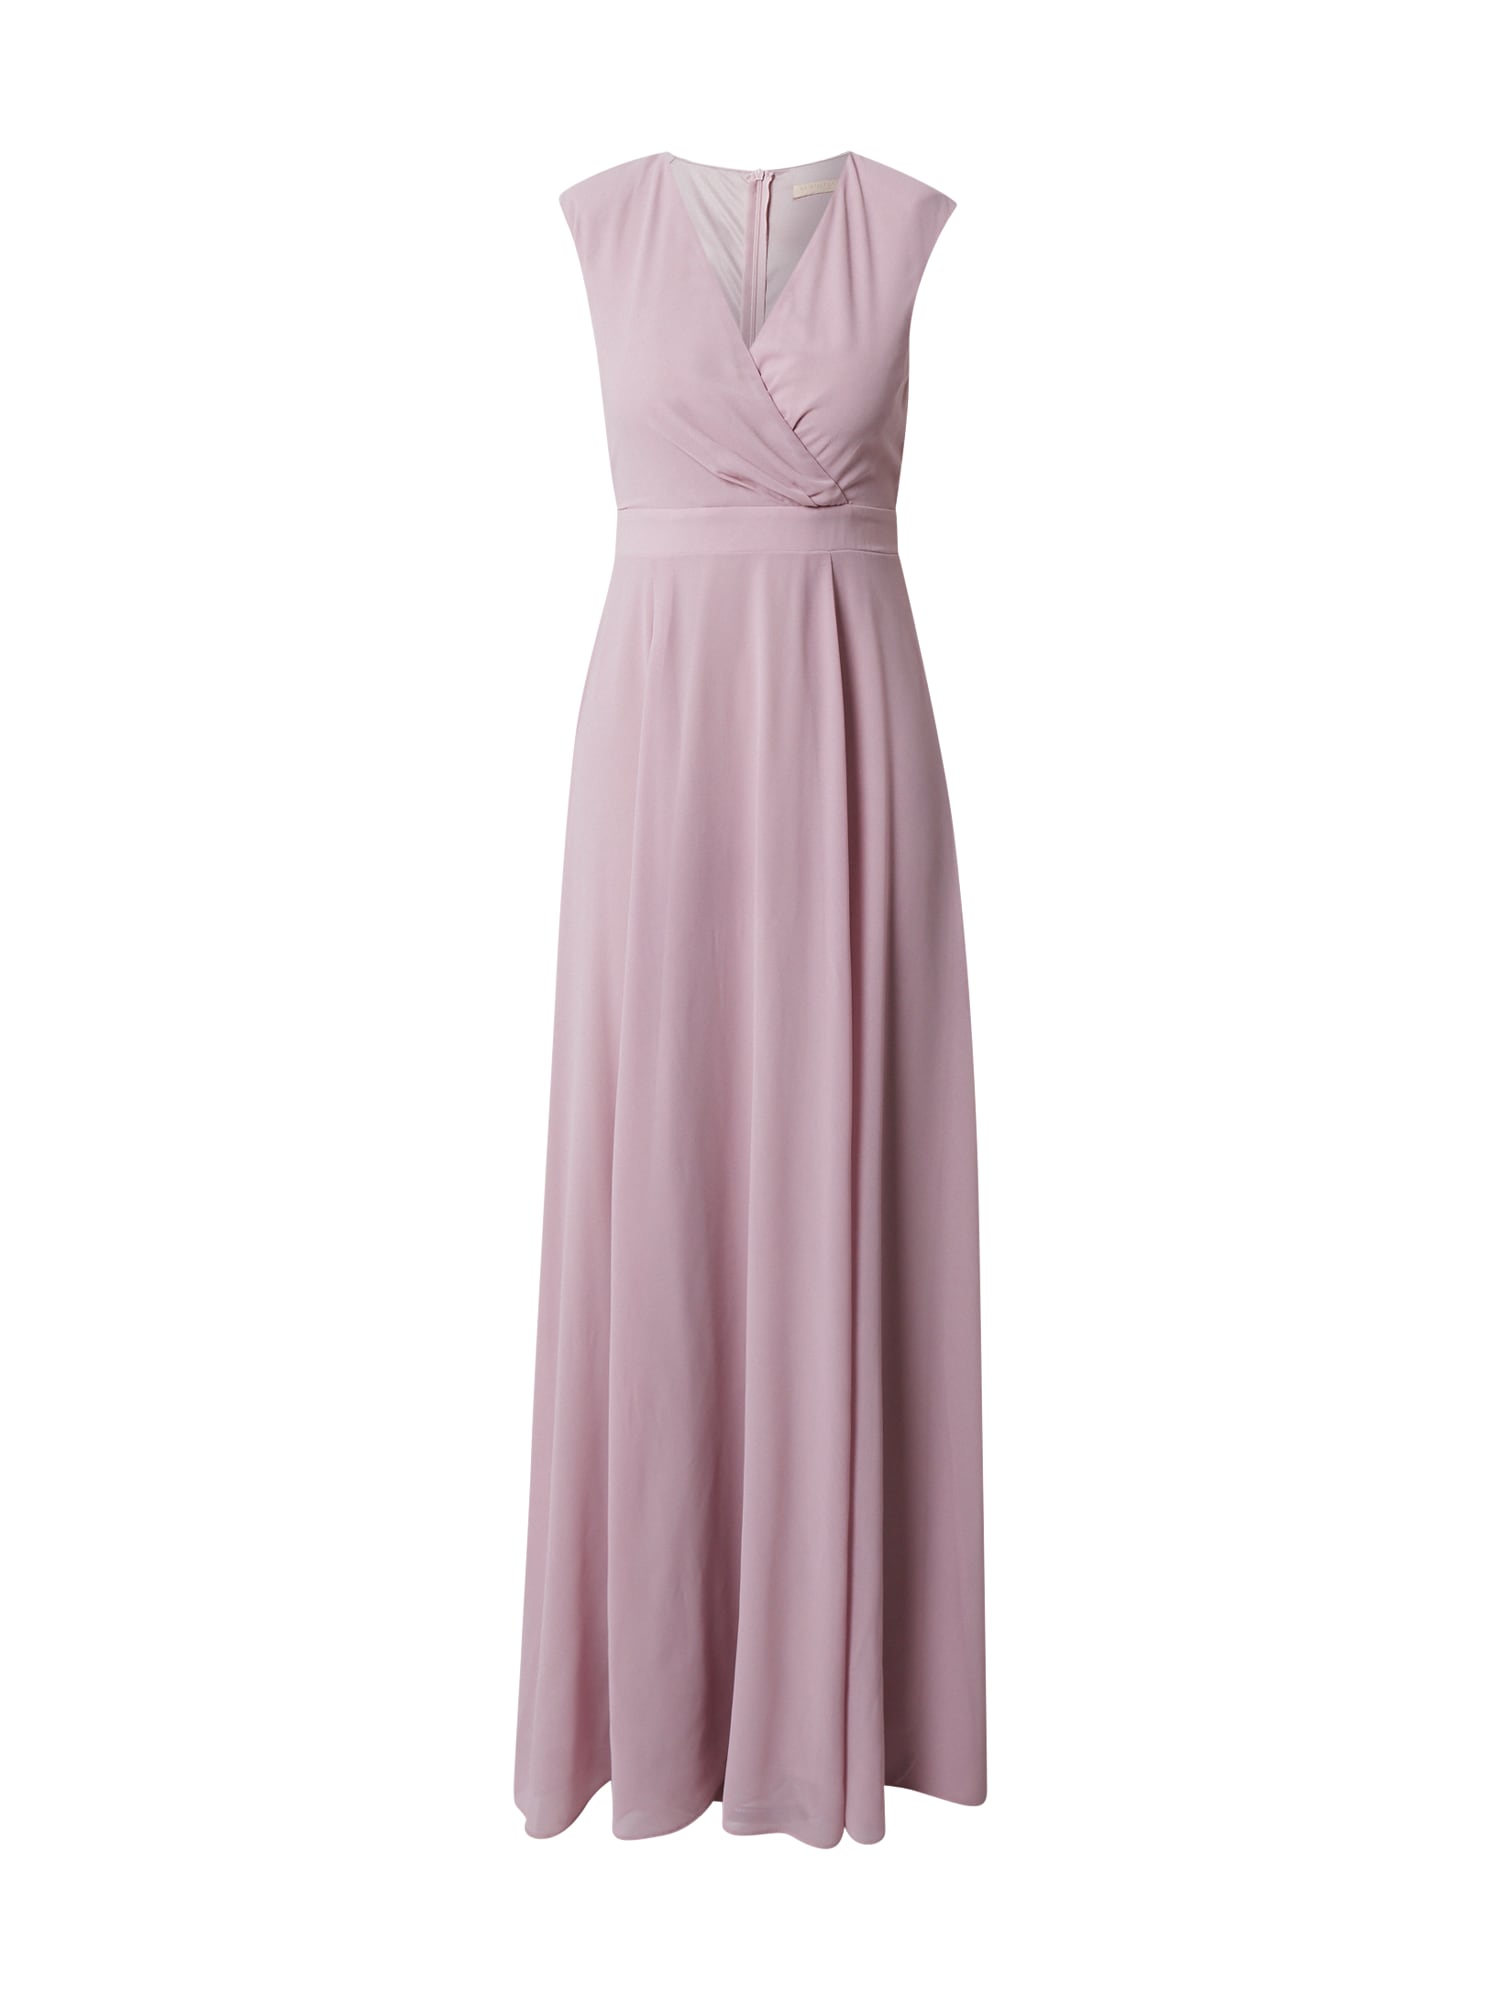 Skirt & Stiletto Suknelė 'Althea' ryškiai rožinė spalva